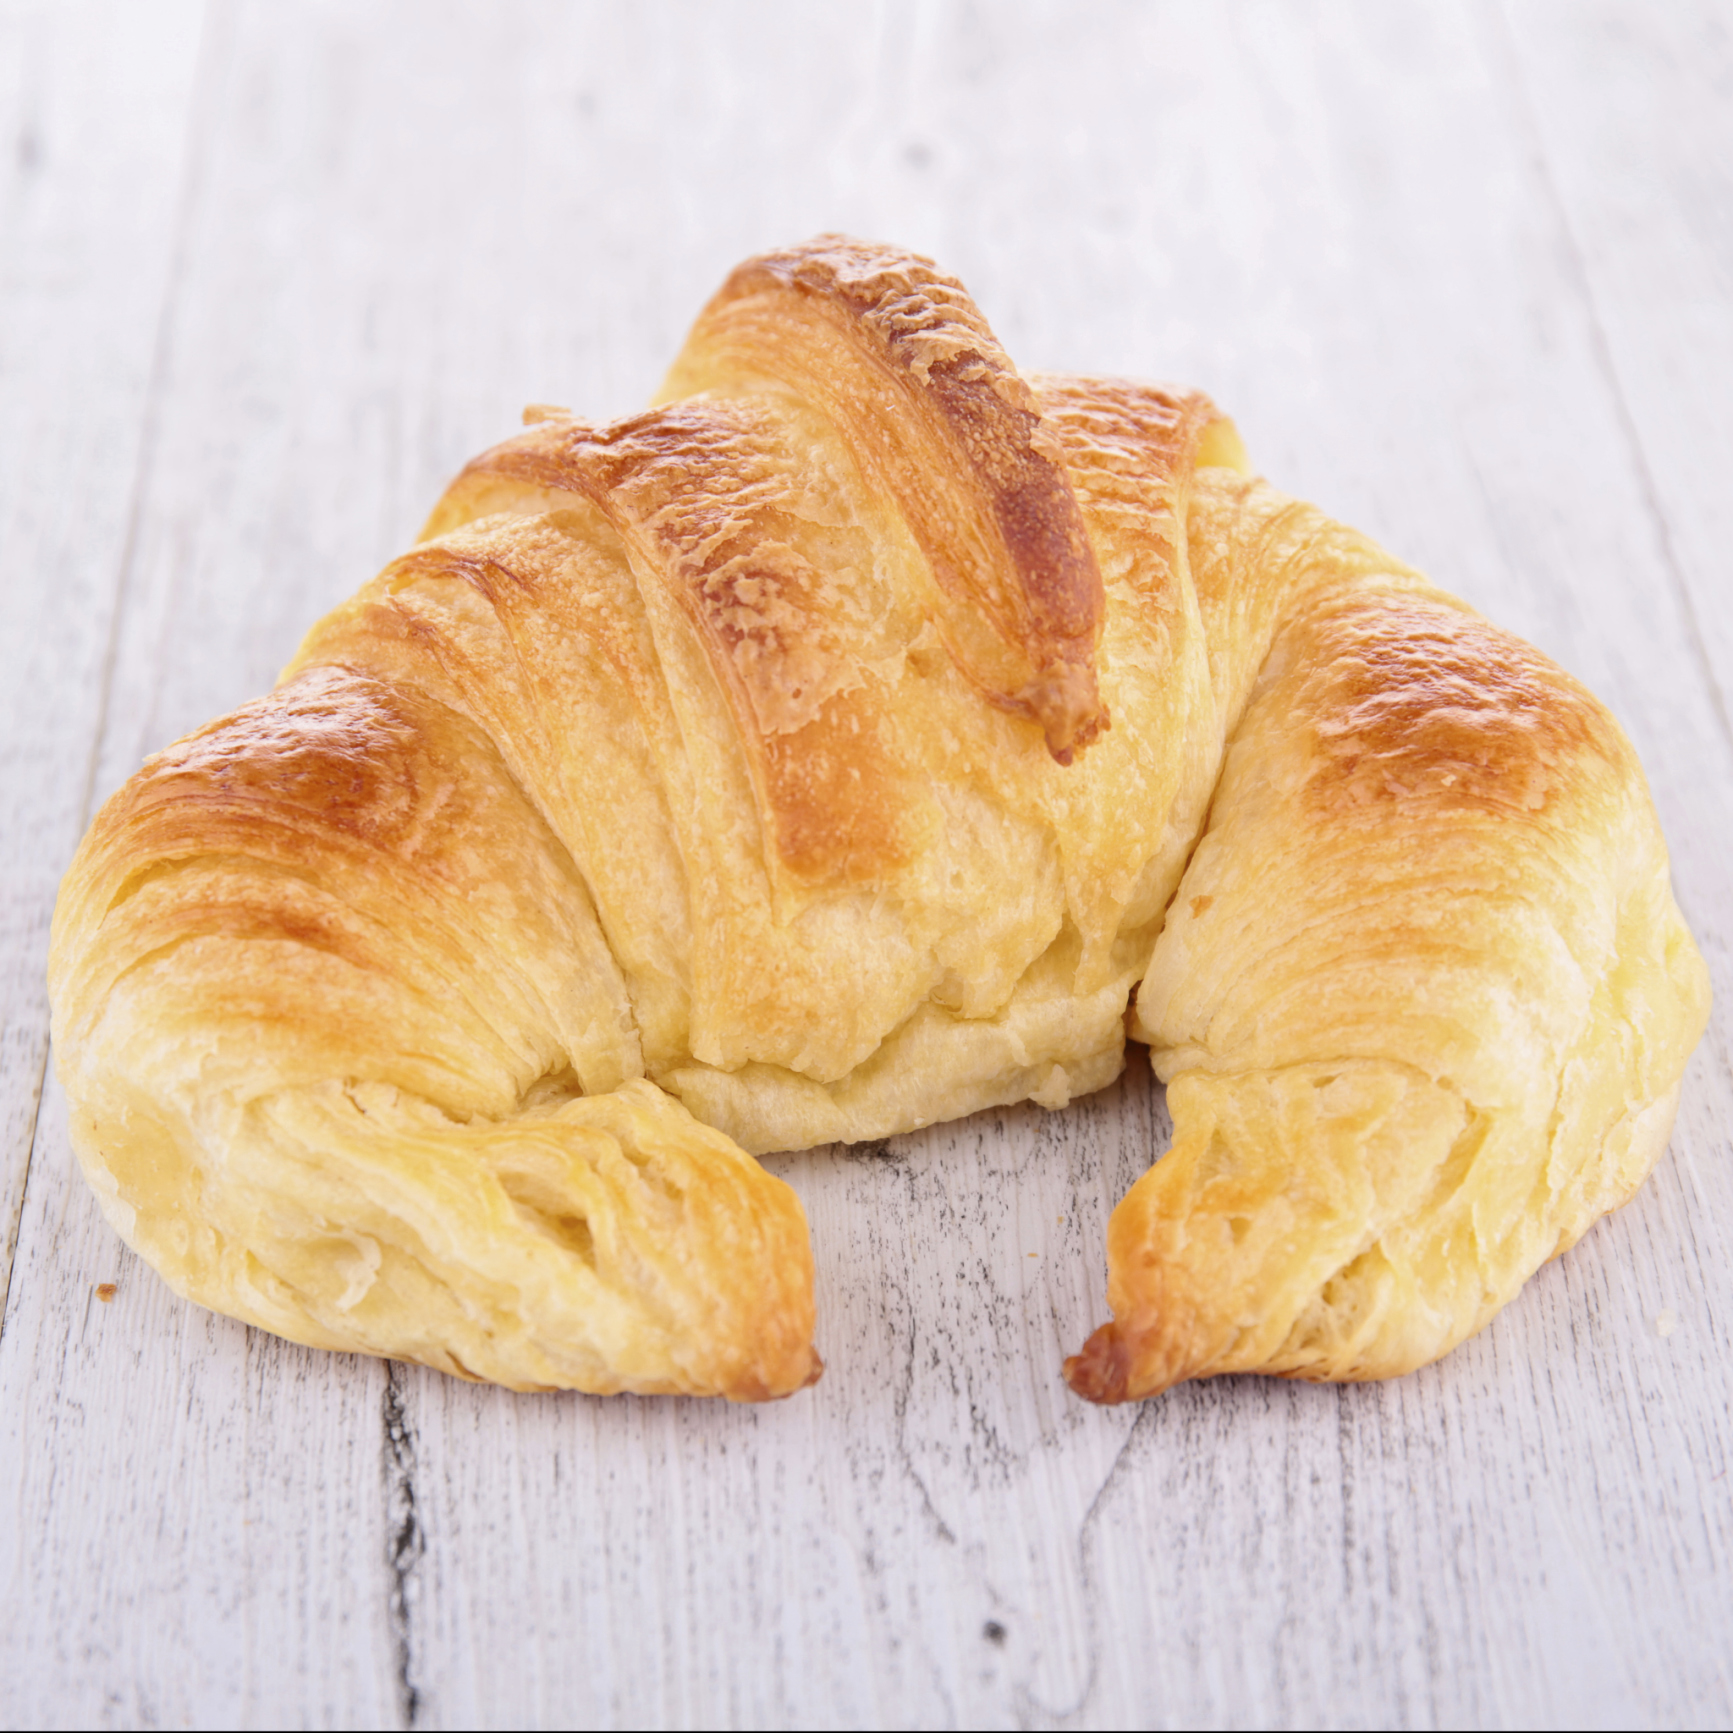 Receta para hacer croissant a mi manera | Recetas DIA